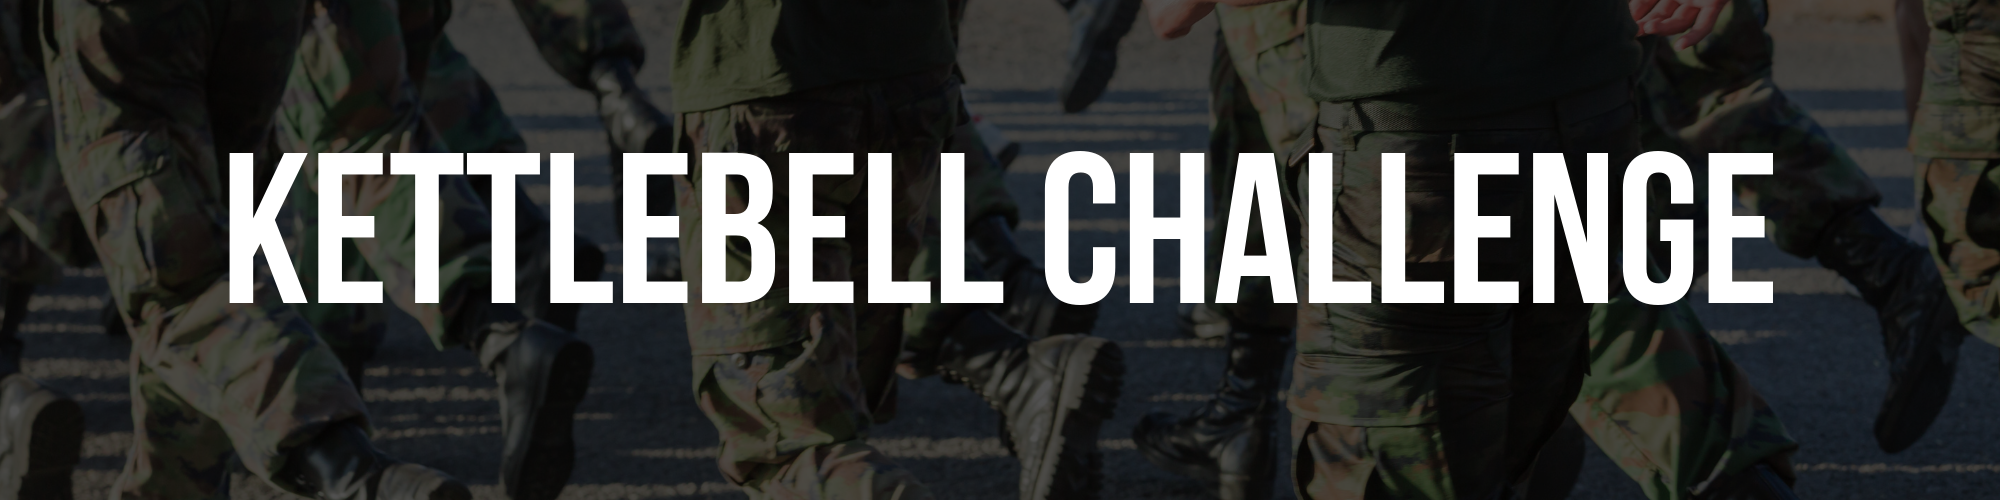 22nd Oct - Kettlebell Challenge